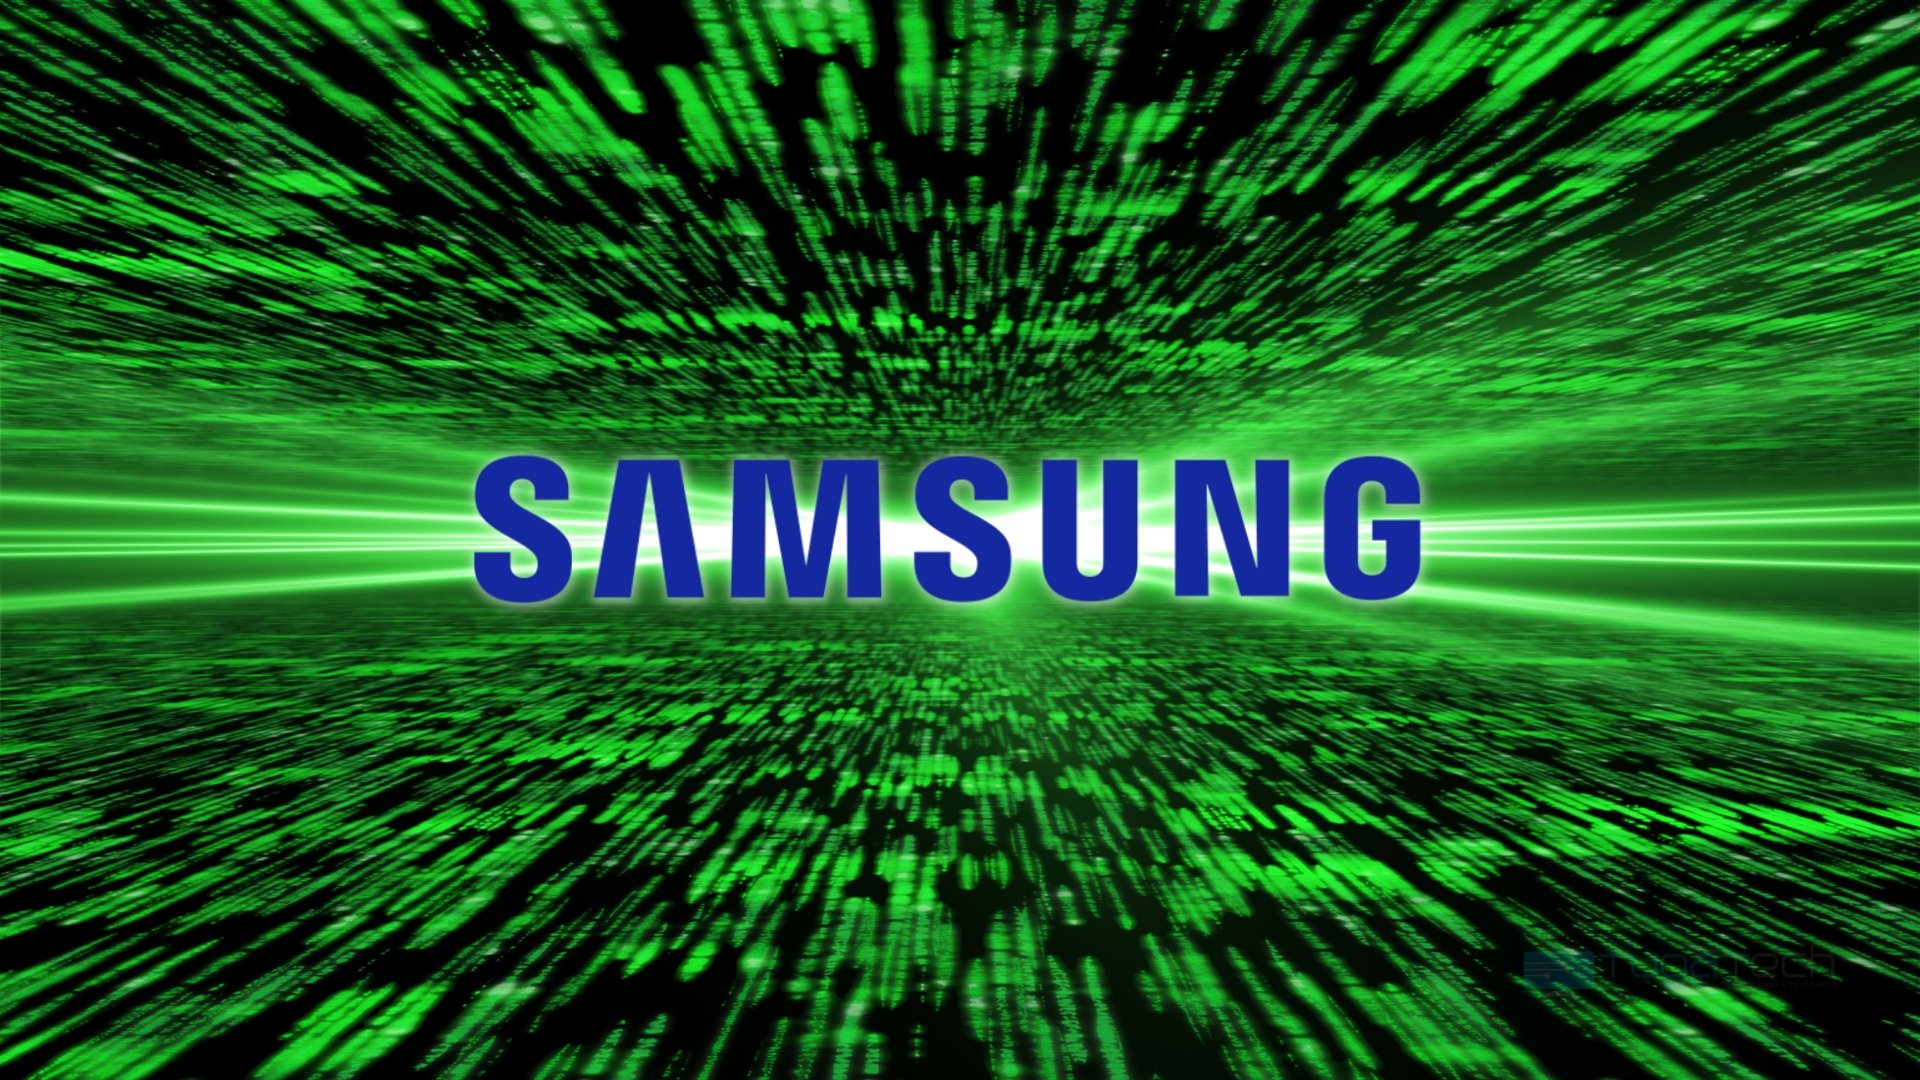 Samsung sobre fundo matrix verde